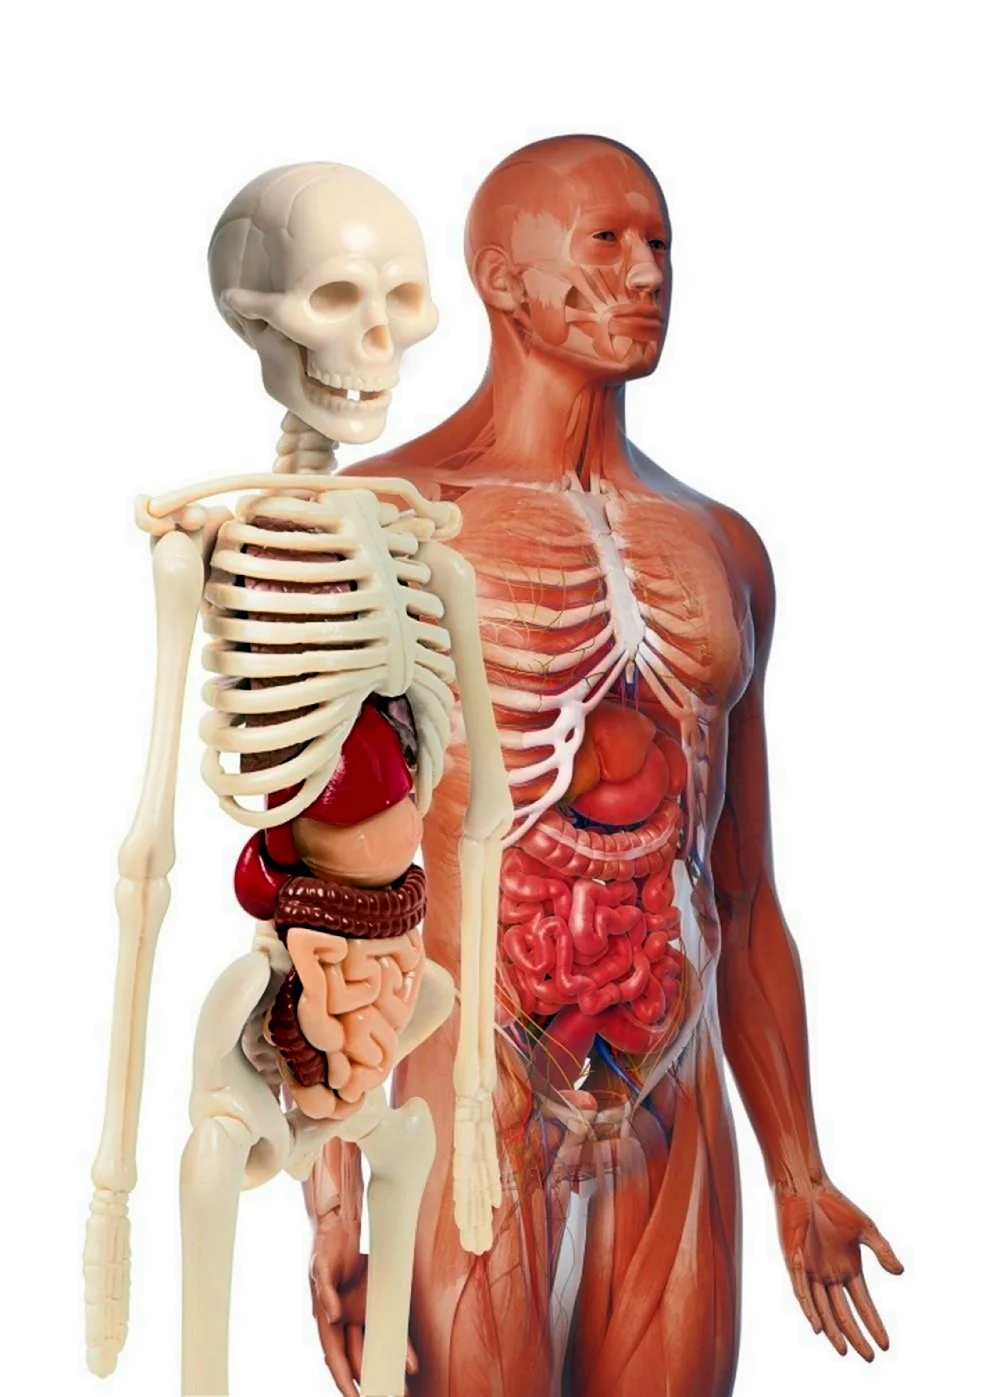 Внутренние органы человека рисунок